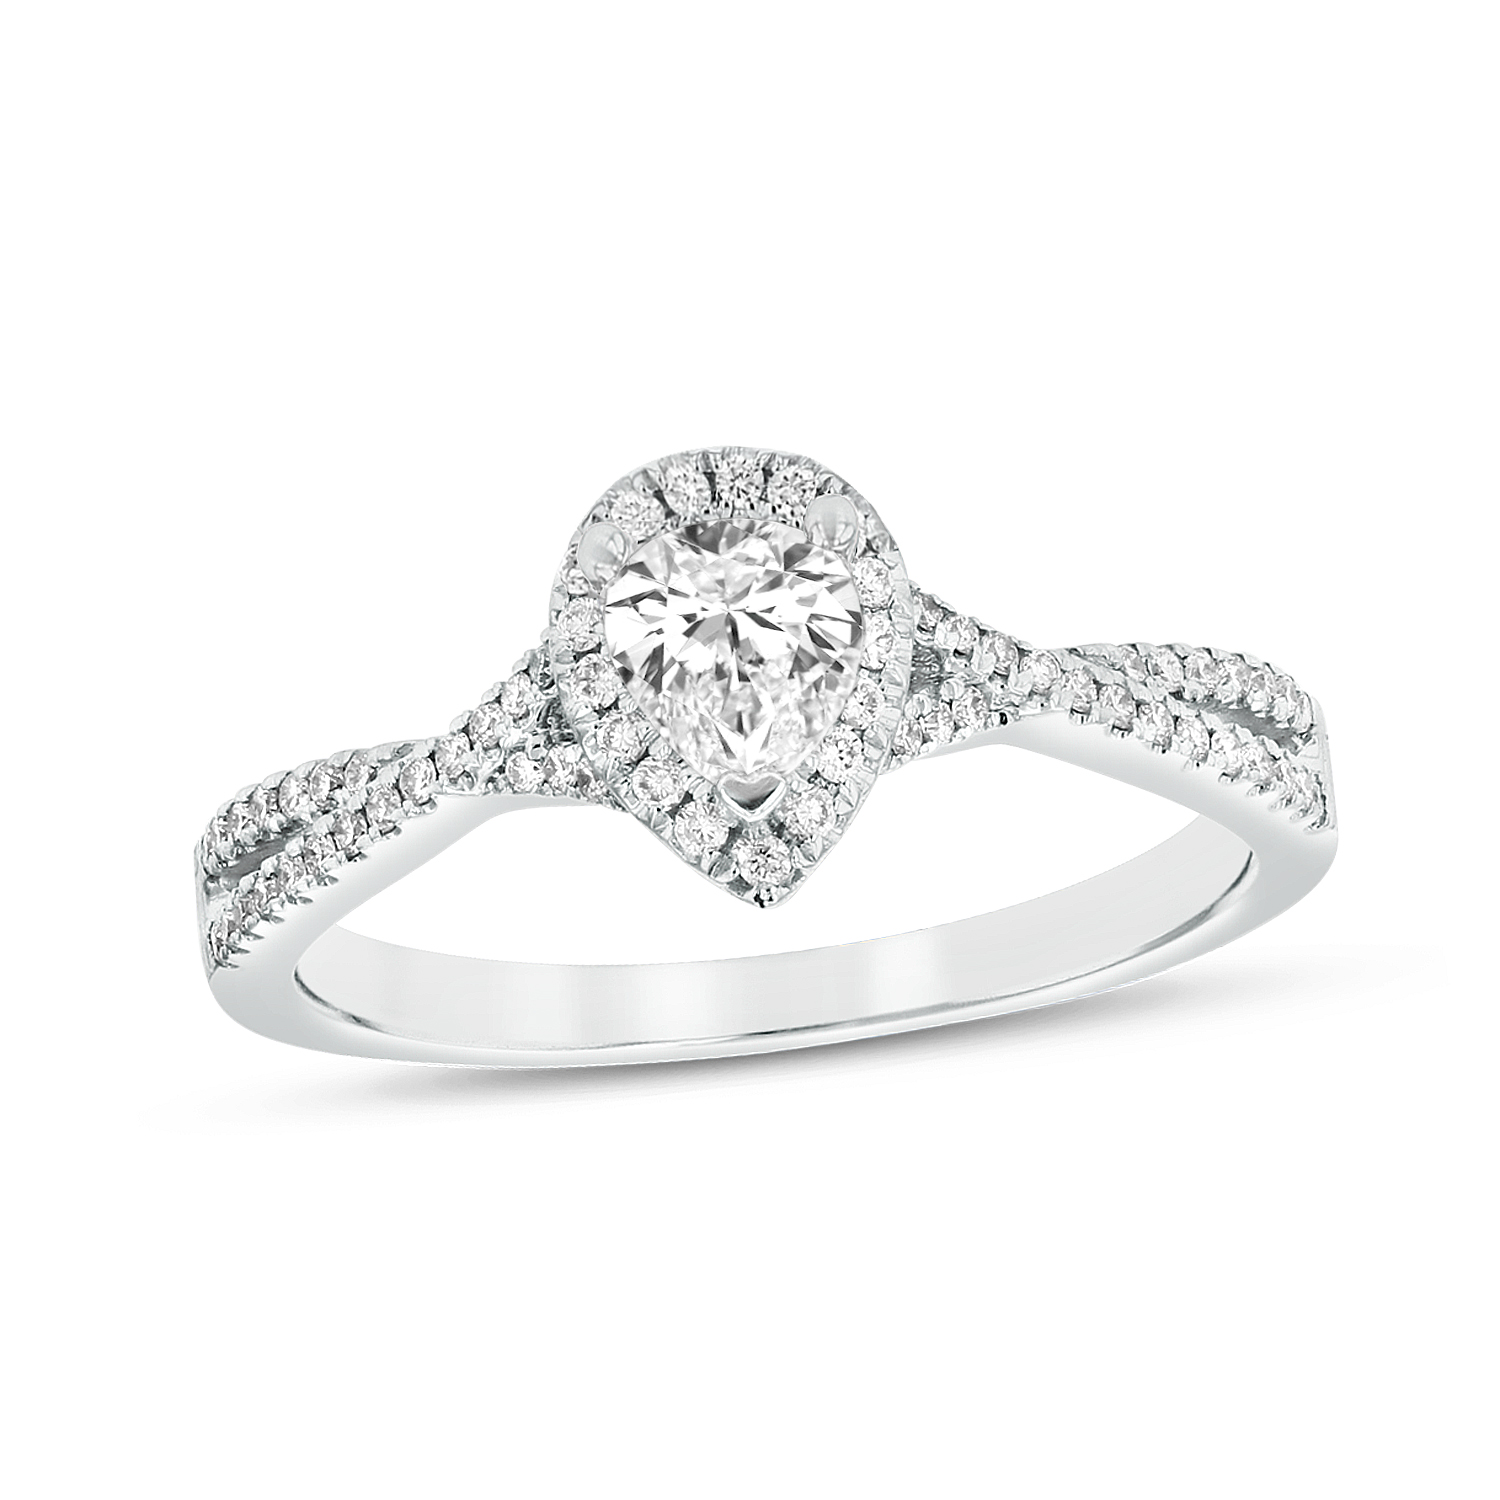 View 0.62ctw Diamond Engagement Ring in Platinum